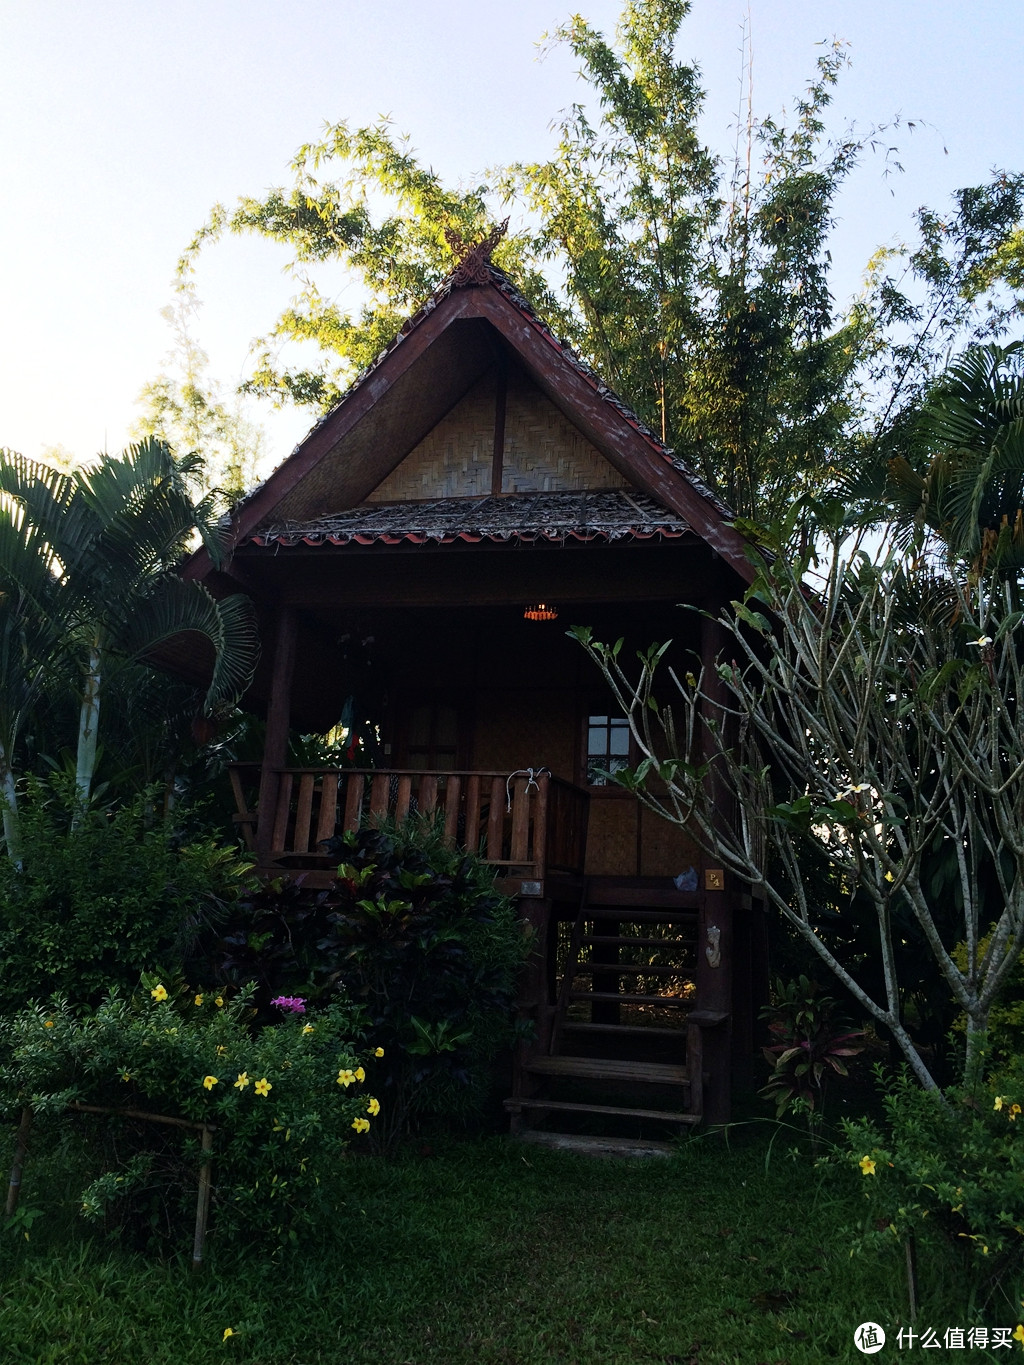 #旅途中的家# 住在泰国